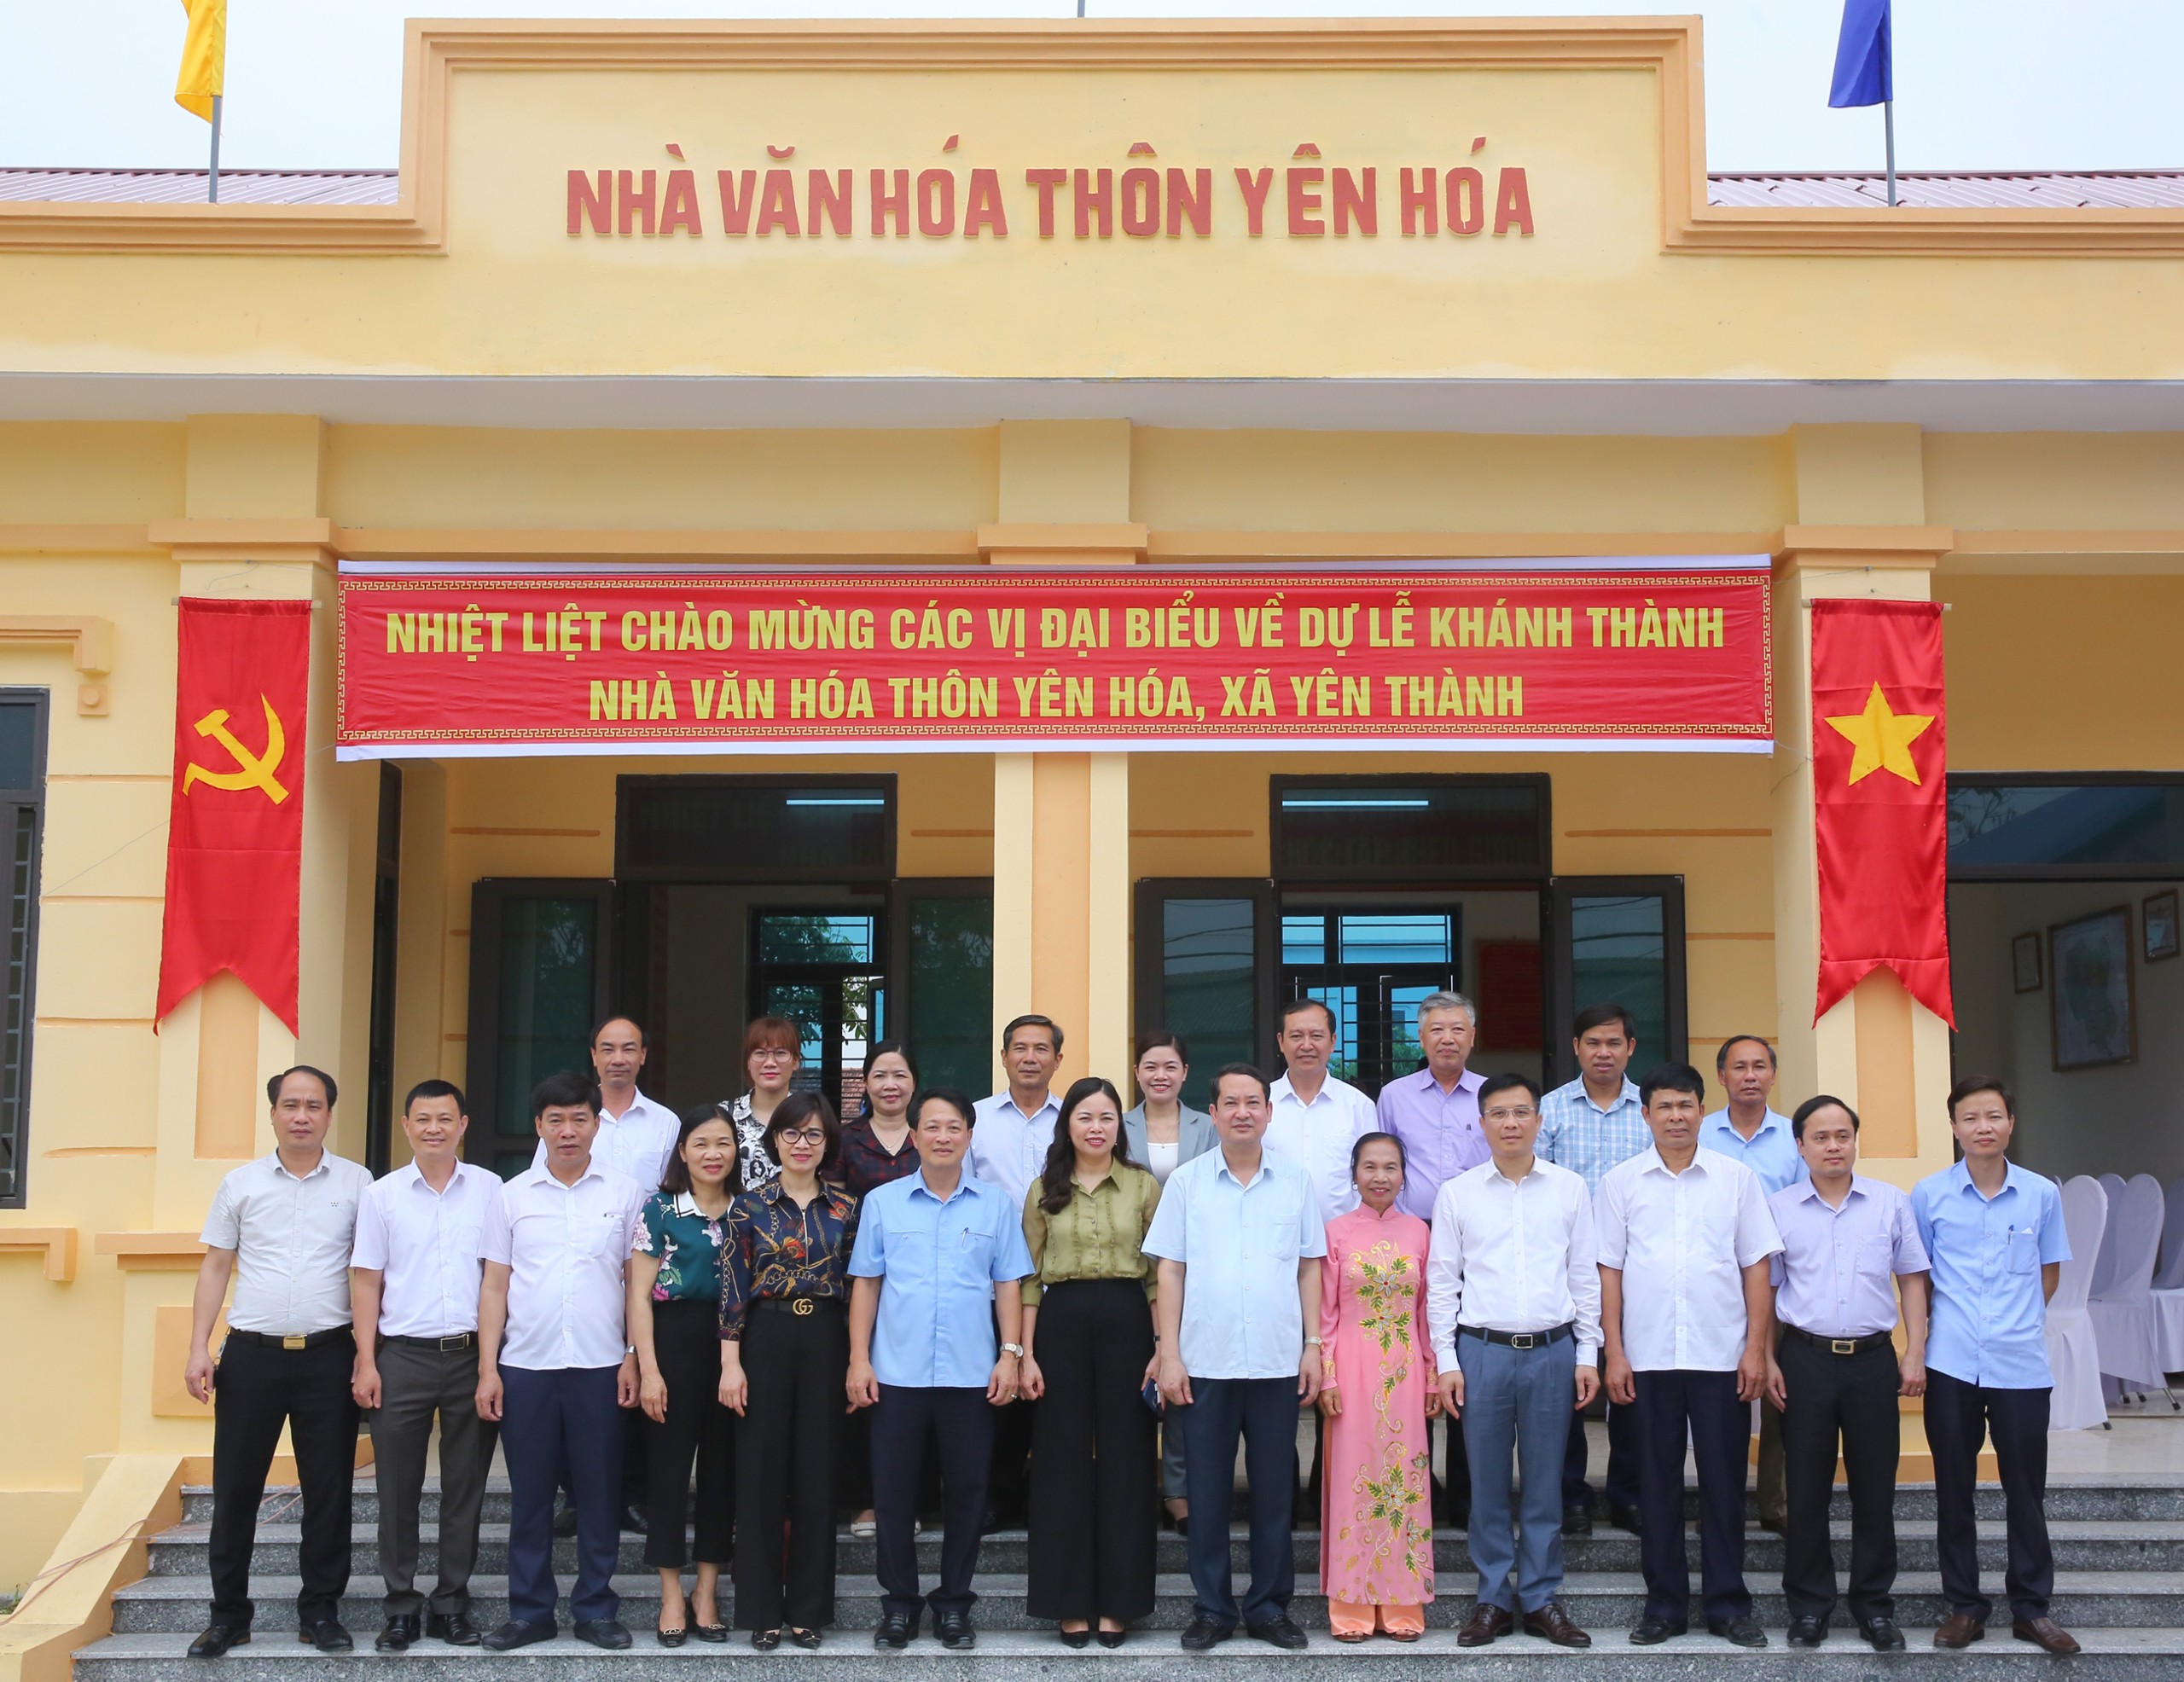 Ban Tổ chức Tỉnh ủy phối hợp với Hội Doanh nghiệp huyện Yên Mô tổ chức khánh thành Nhà văn hóa thôn Yên Hóa